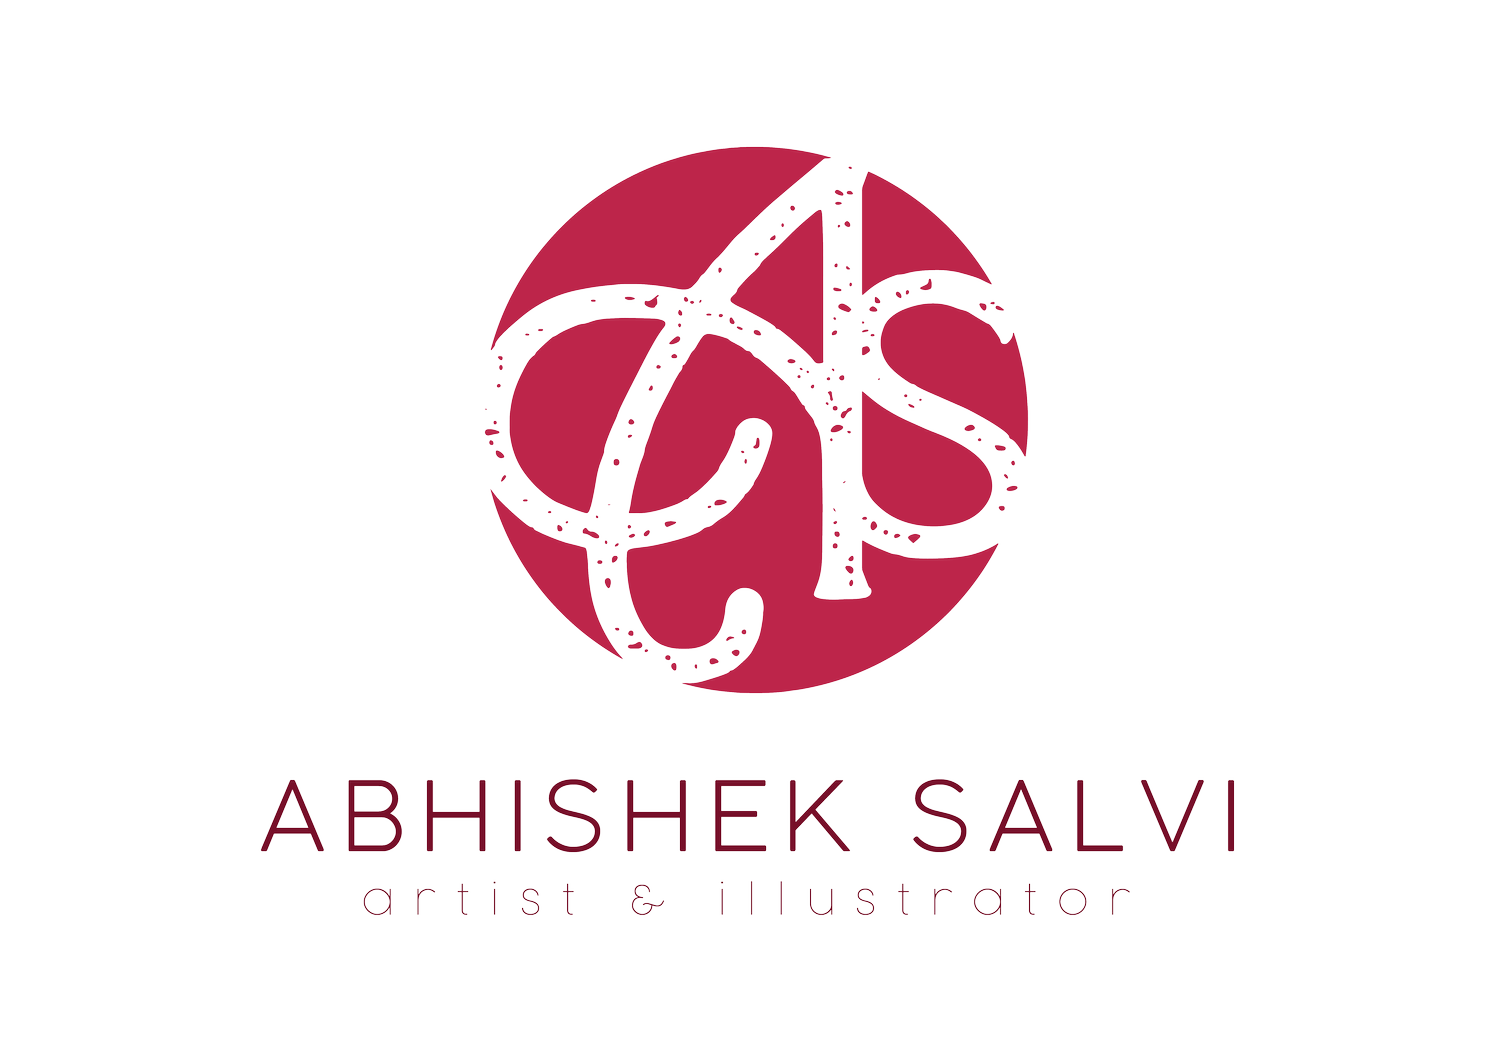 Abhishek Salvi